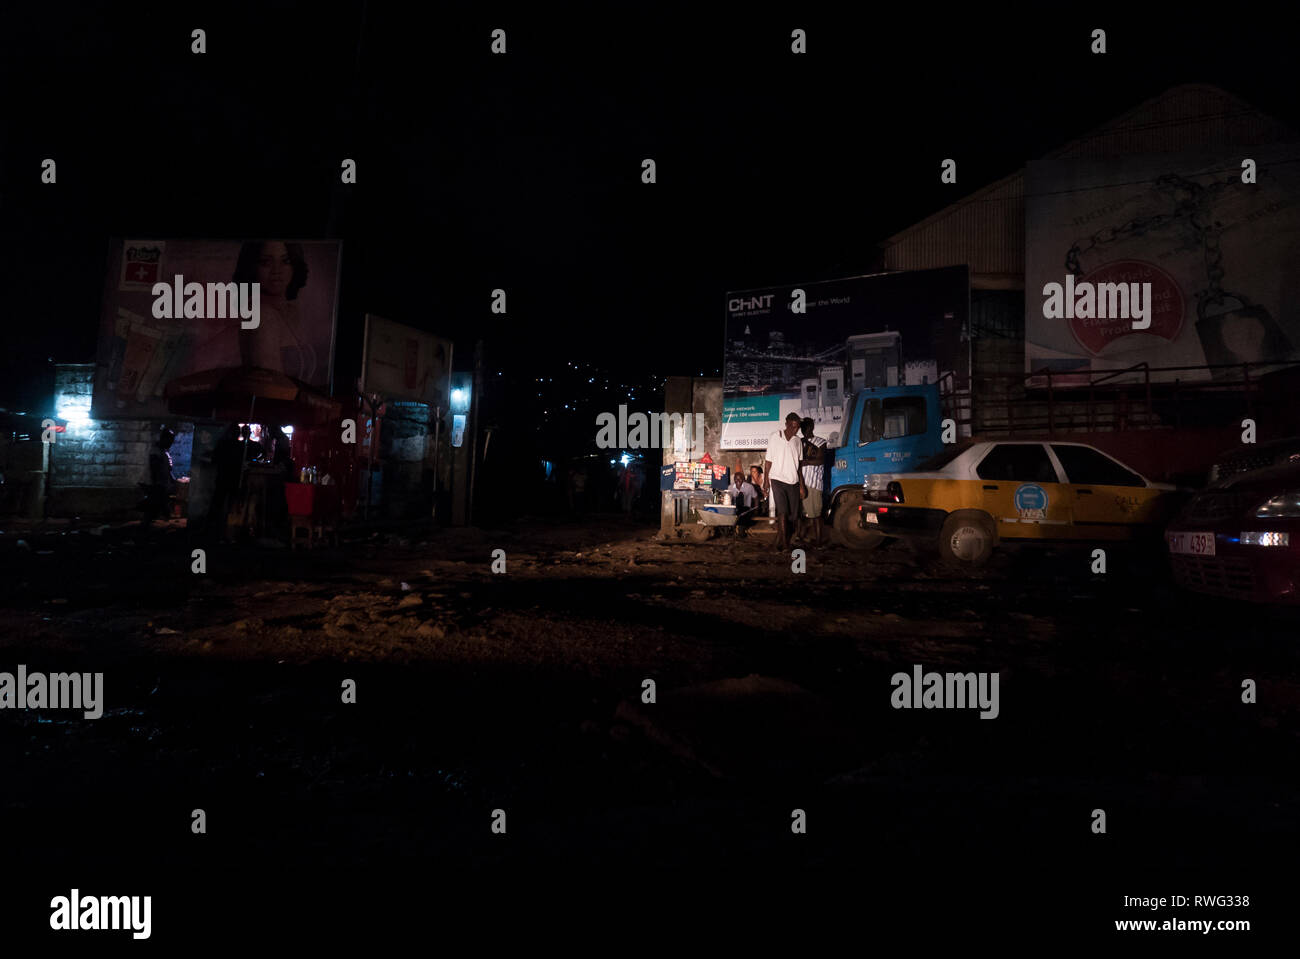 A noir look of nighttime in Freetown, Sierra Leone. Stock Photo